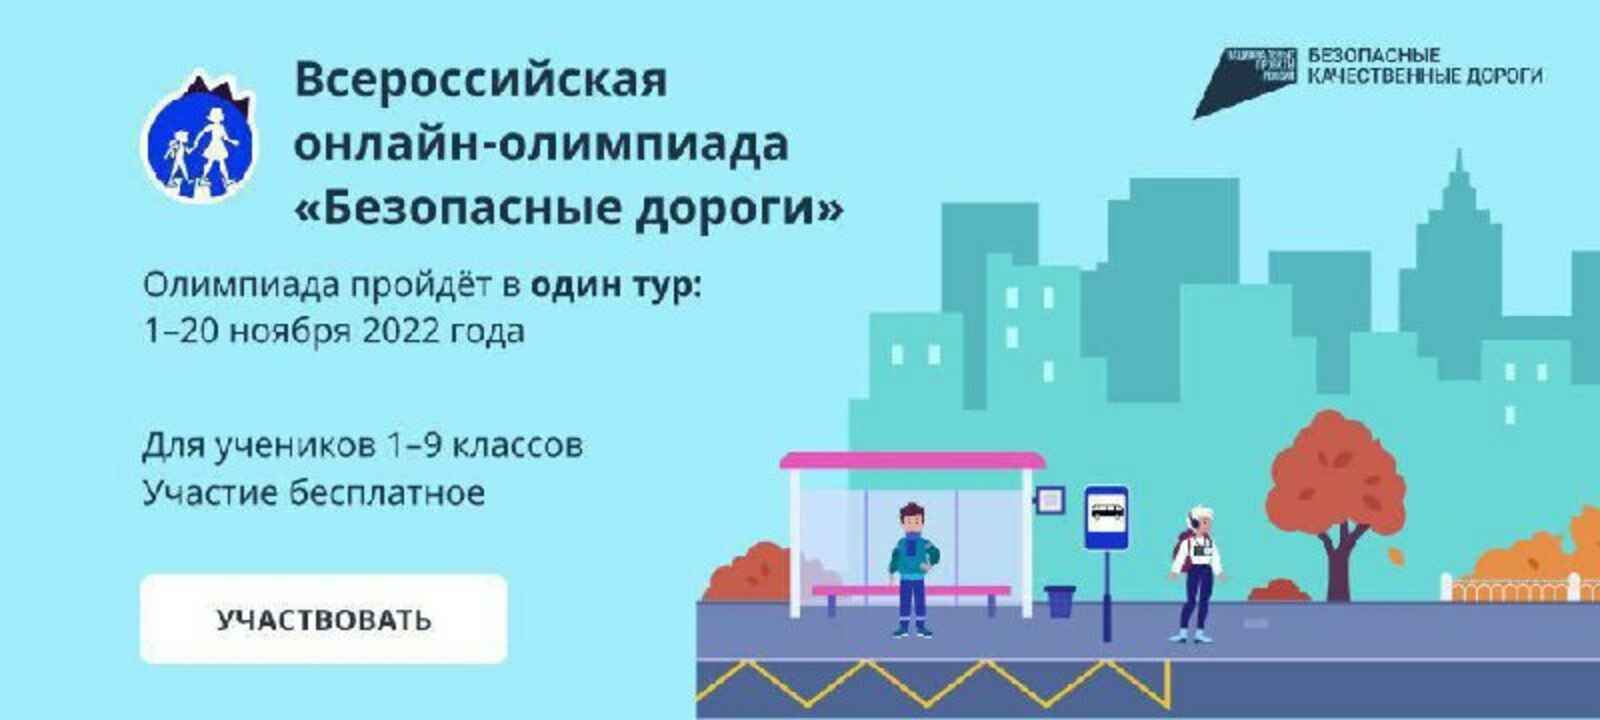 Стартовала Всероссийская онлайн-олимпиада по ПДД «Безопасные дороги»